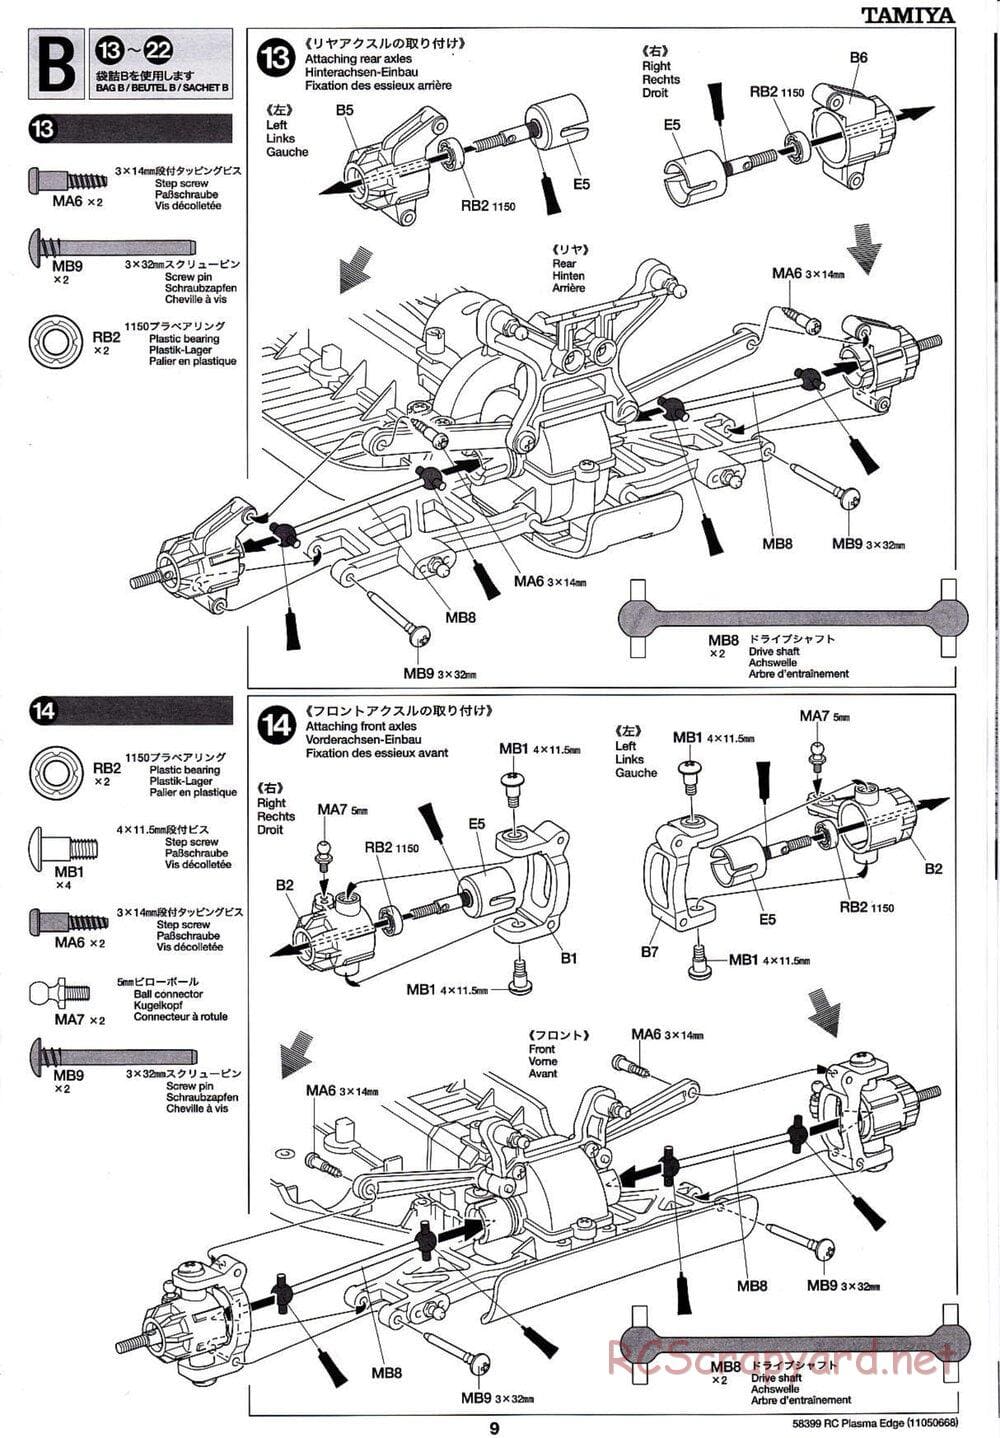 Tamiya - Plasma Edge Chassis - Manual - Page 9